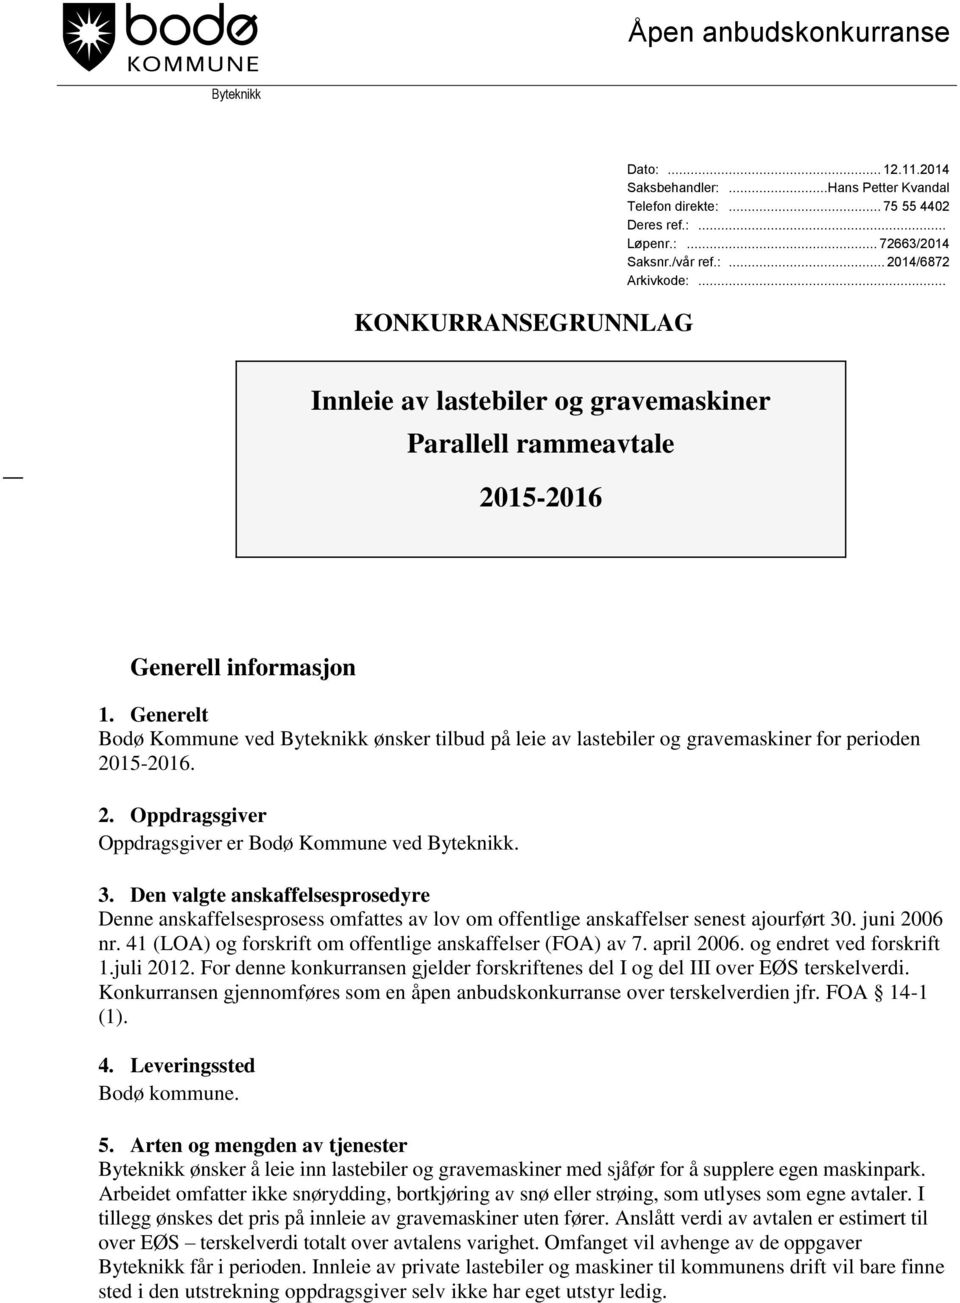 Generelt Bodø Kommune ved Byteknikk ønsker tilbud på leie av lastebiler og gravemaskiner for perioden 2015-2016. 2. Oppdragsgiver Oppdragsgiver er Bodø Kommune ved Byteknikk. 3.